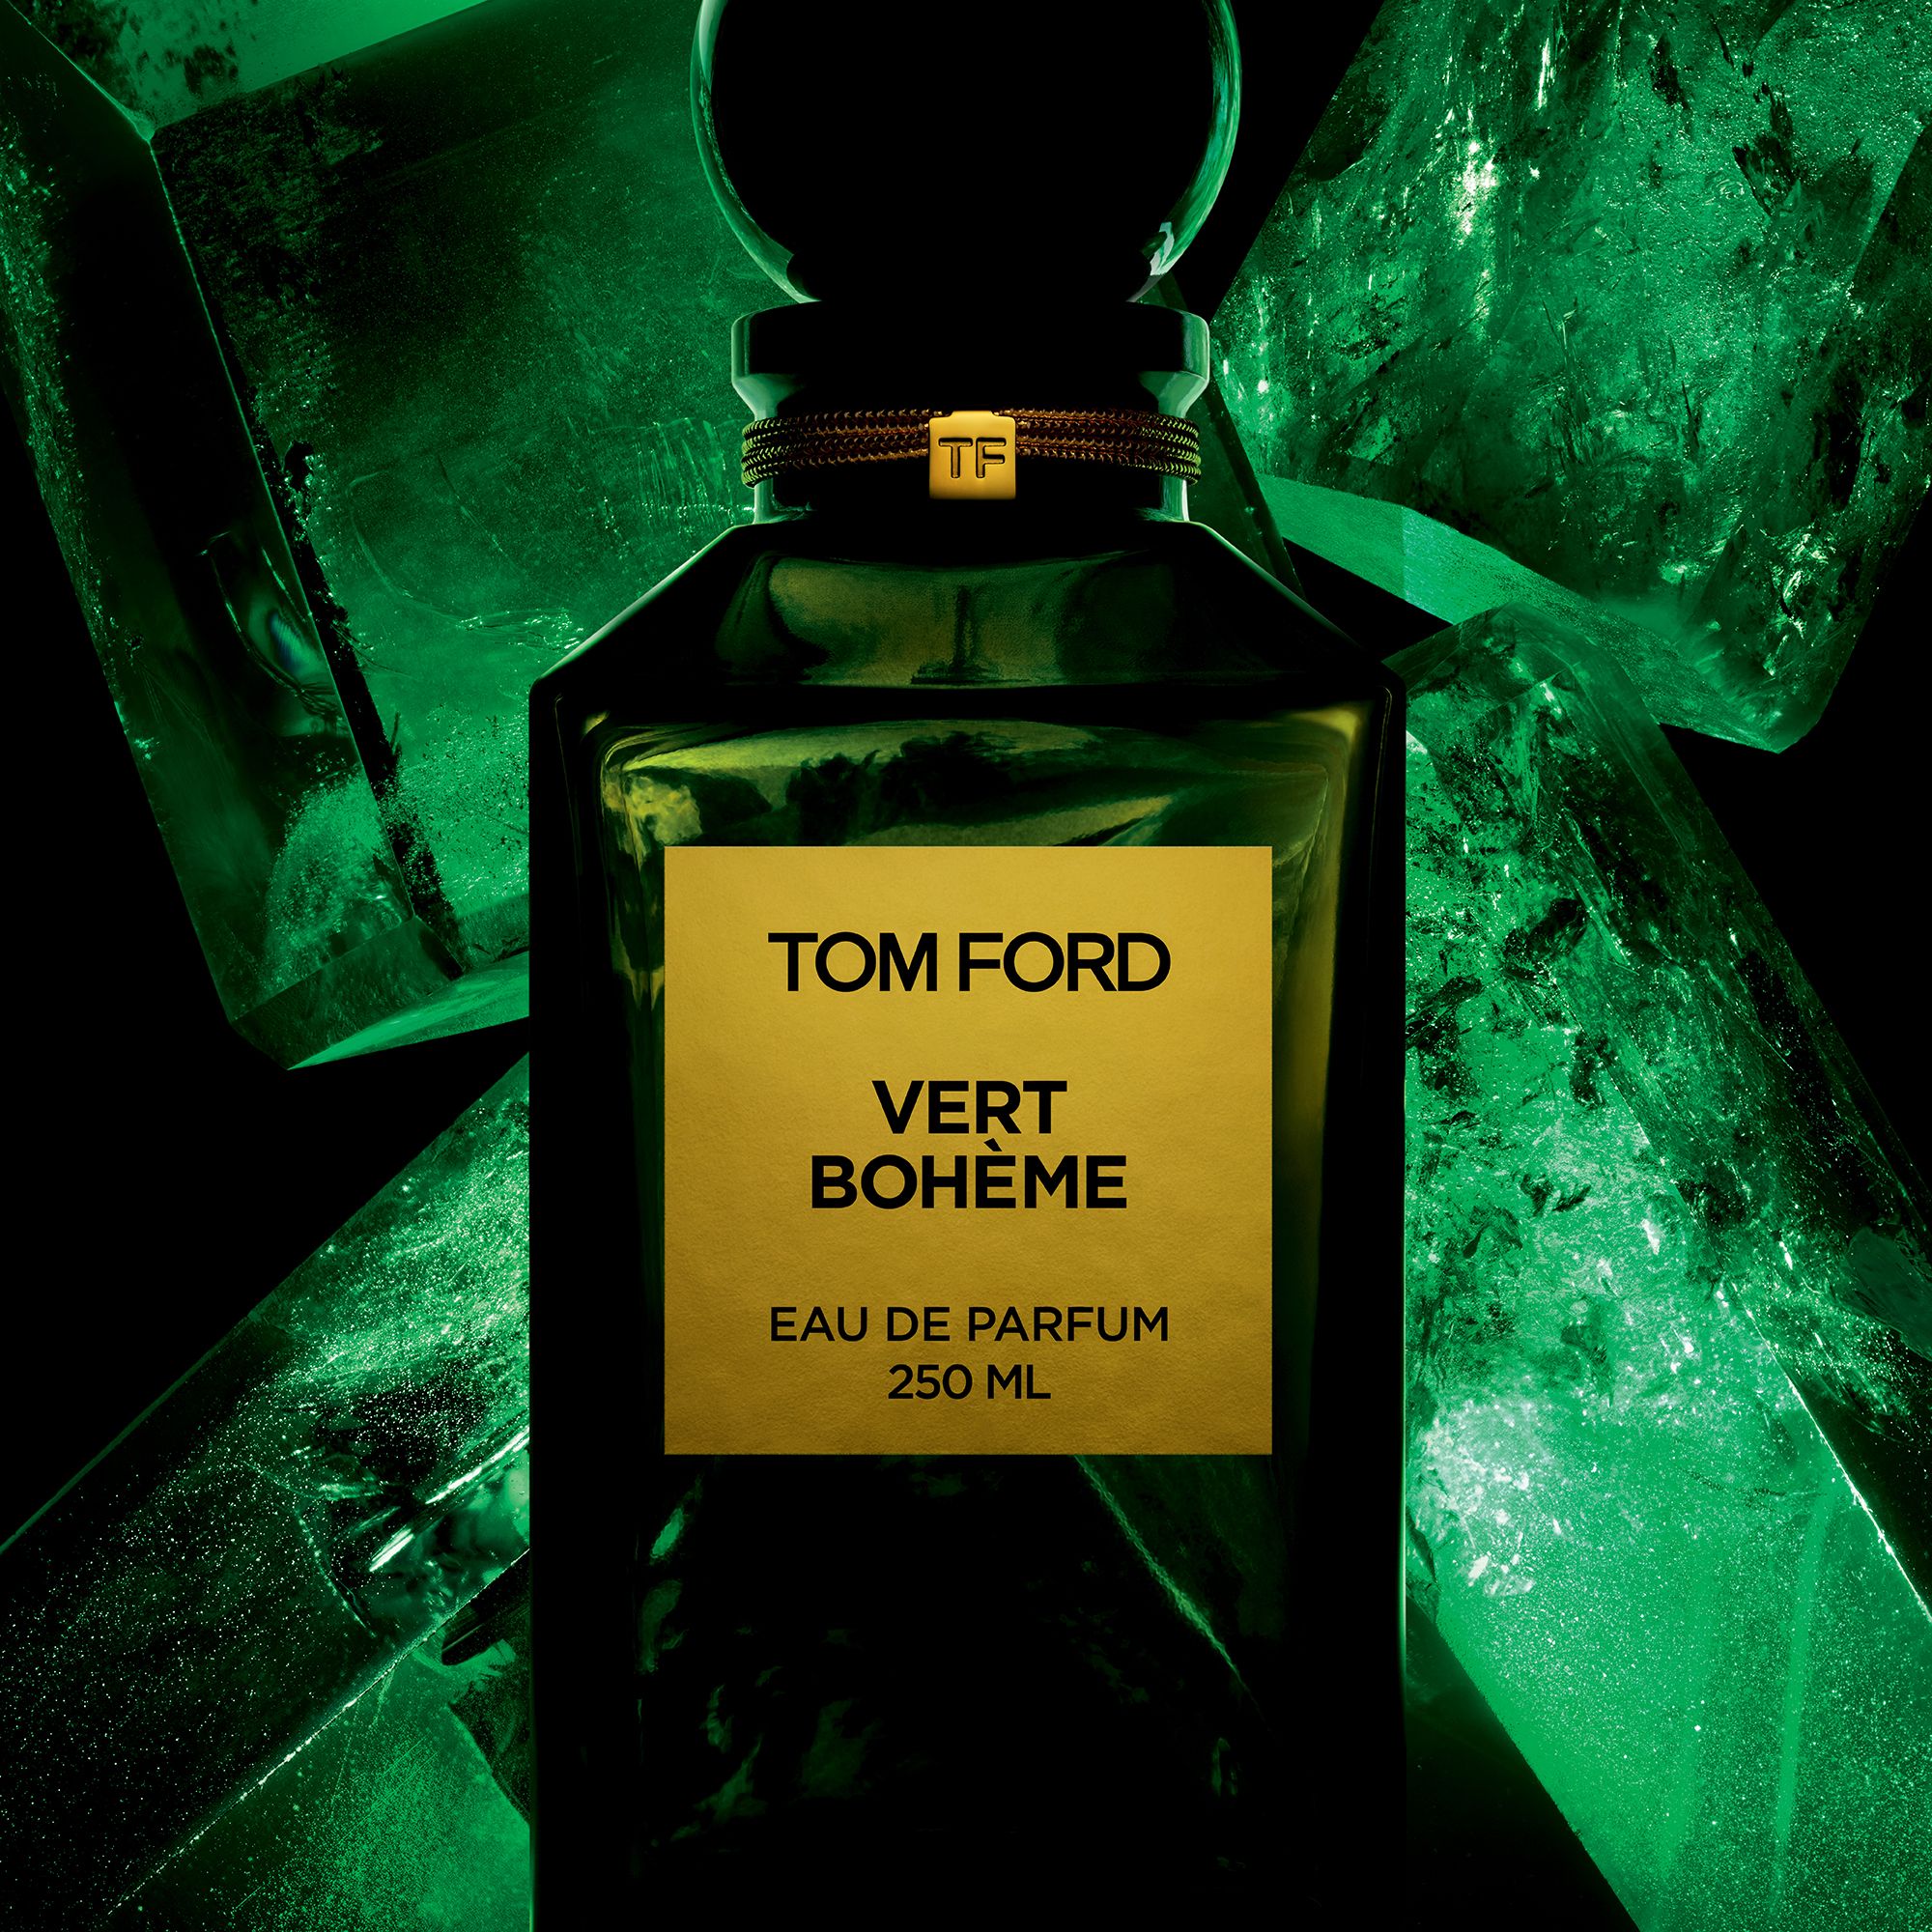 TOM FORD Private Blend Vert Bohème Eau de Parfum, 250ml